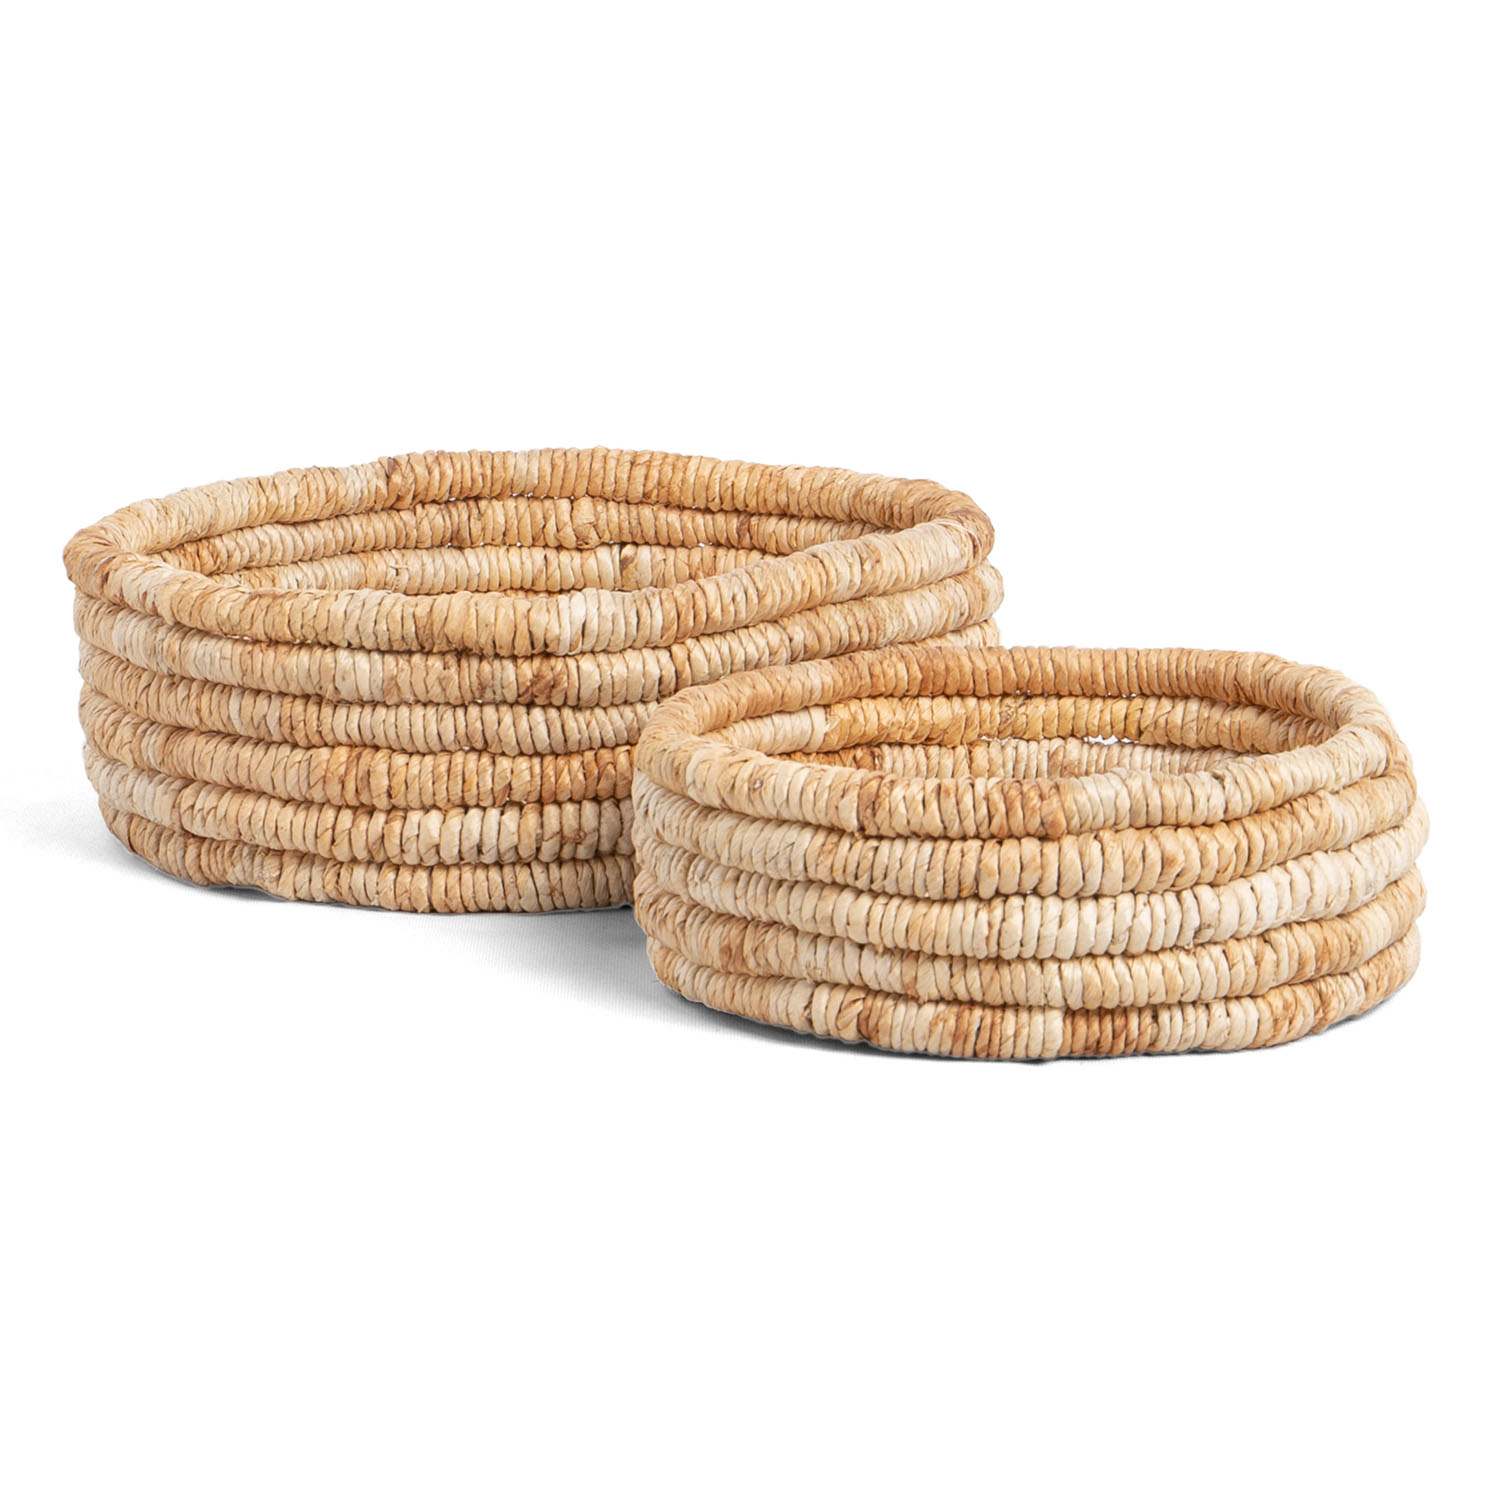 Caterpillar Ambang Low Basket -Set of 2 LBS3015N